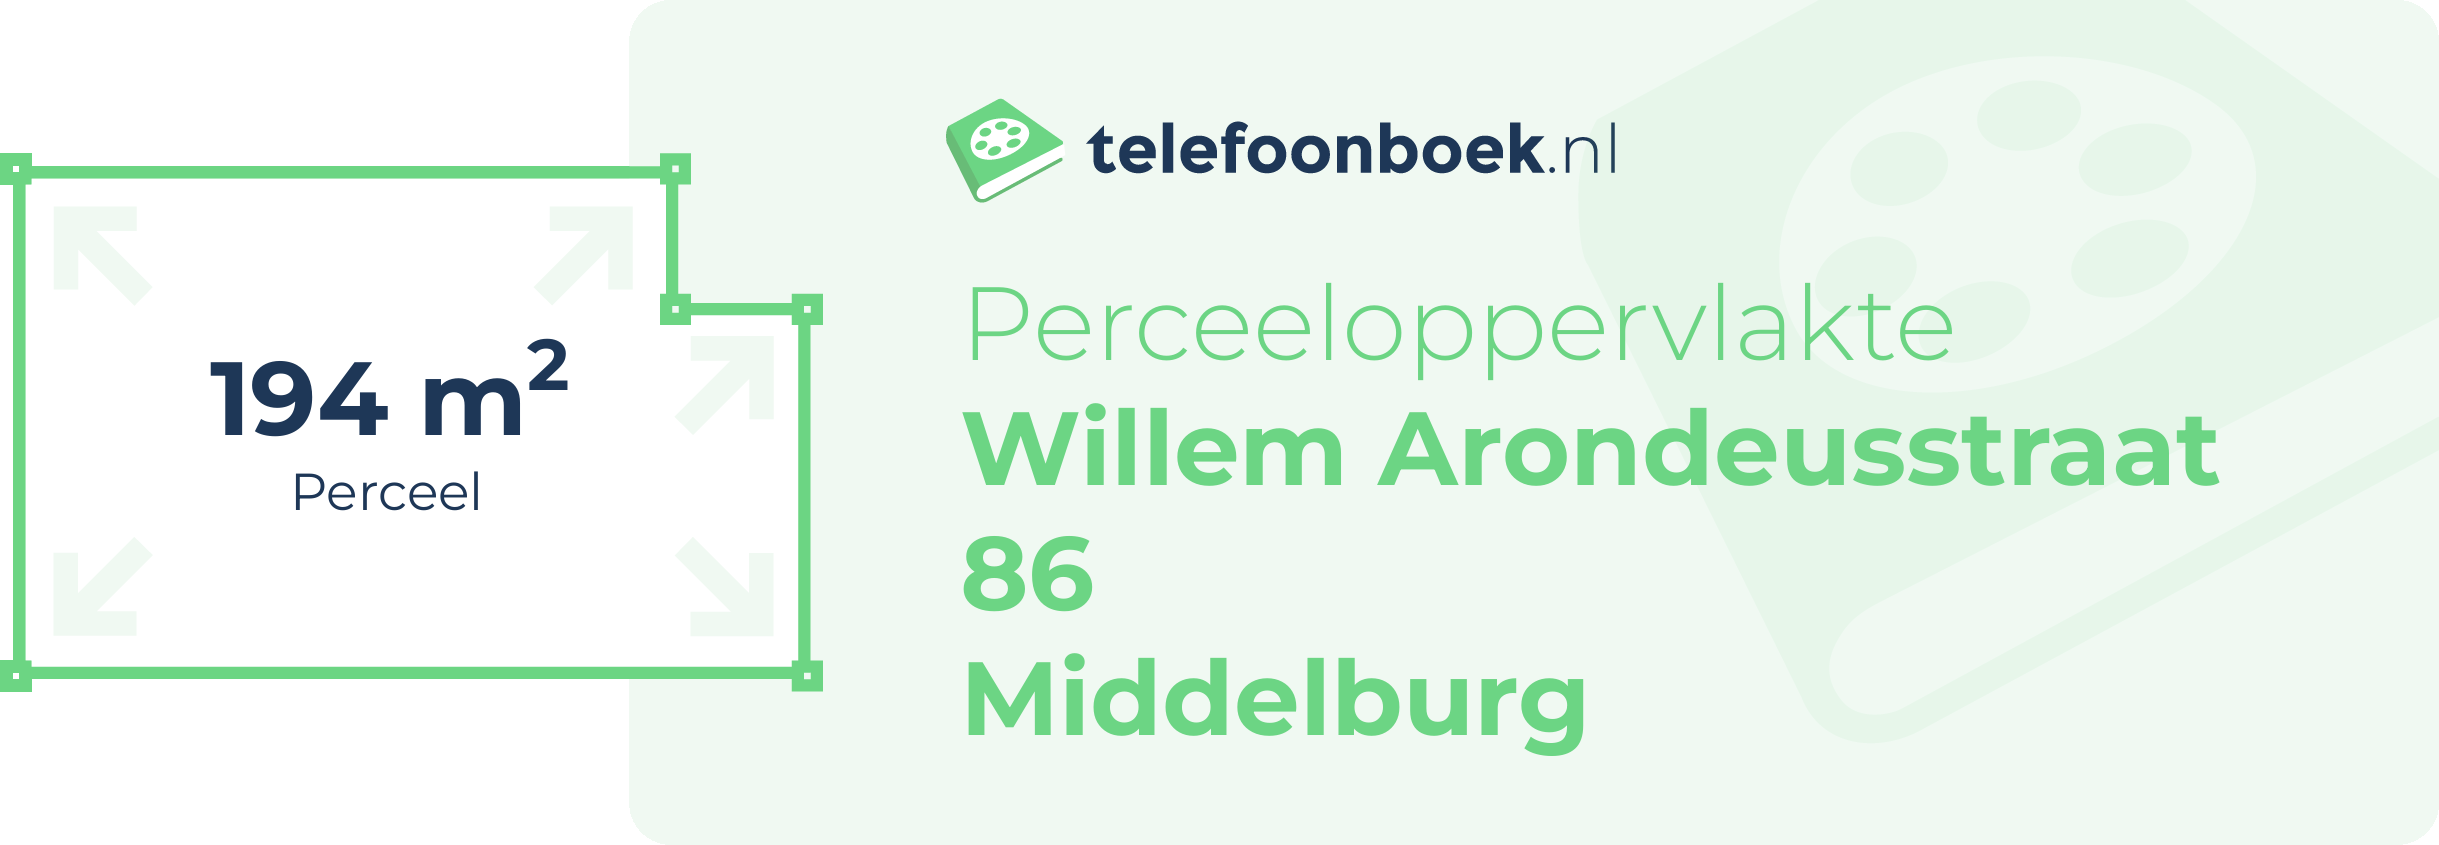 Perceeloppervlakte Willem Arondeusstraat 86 Middelburg